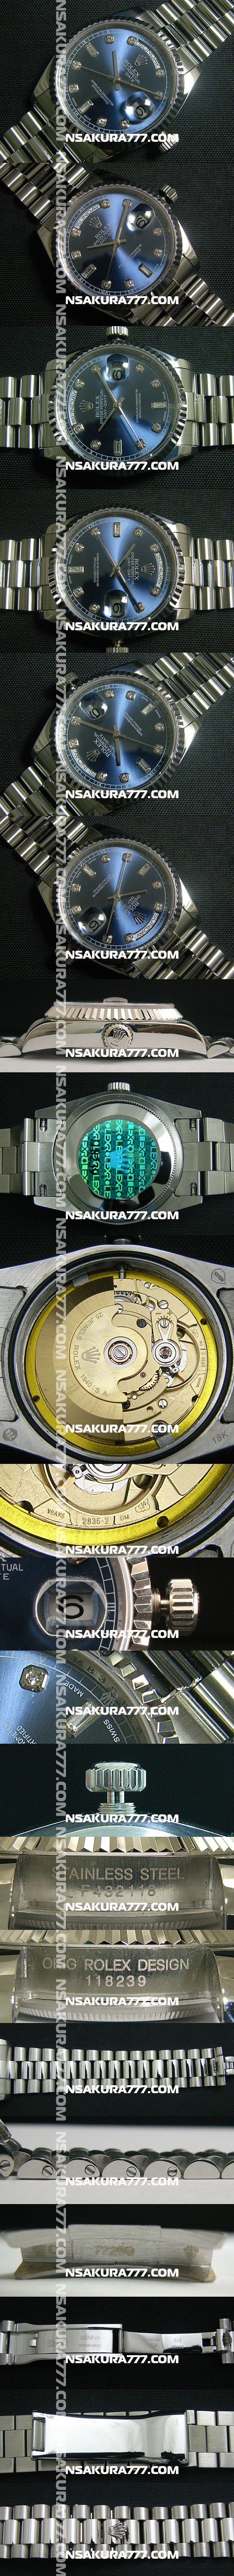 レプリカ時計ロレックスSwiss ETA社 2836-2 ムーブメント 28800振動 オートマティック(自動巻き) - ウインドウを閉じる